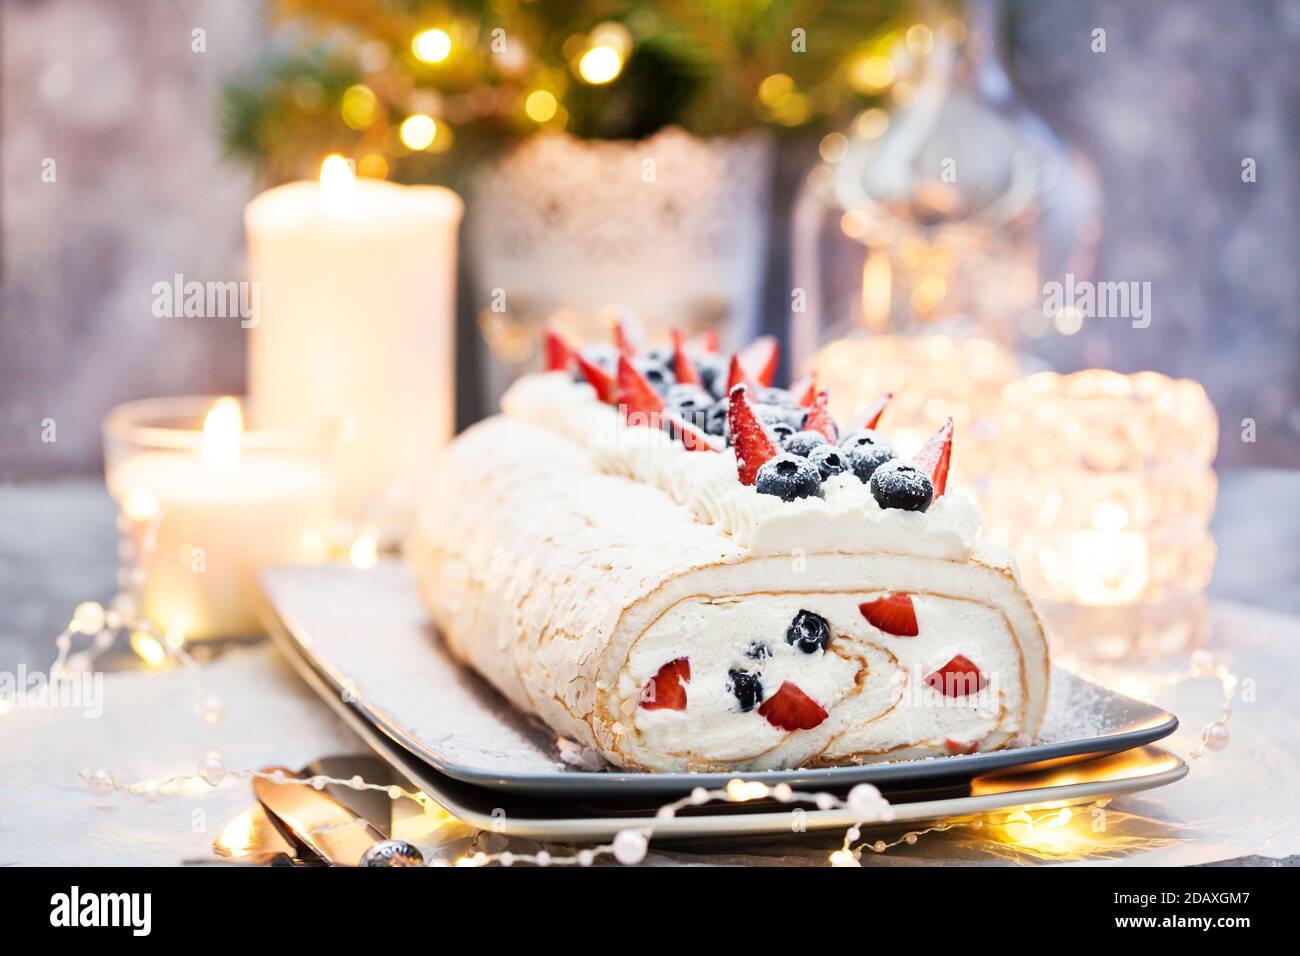 Gâteau au rouleau meringue avec crème et baies fraîches Banque D'Images